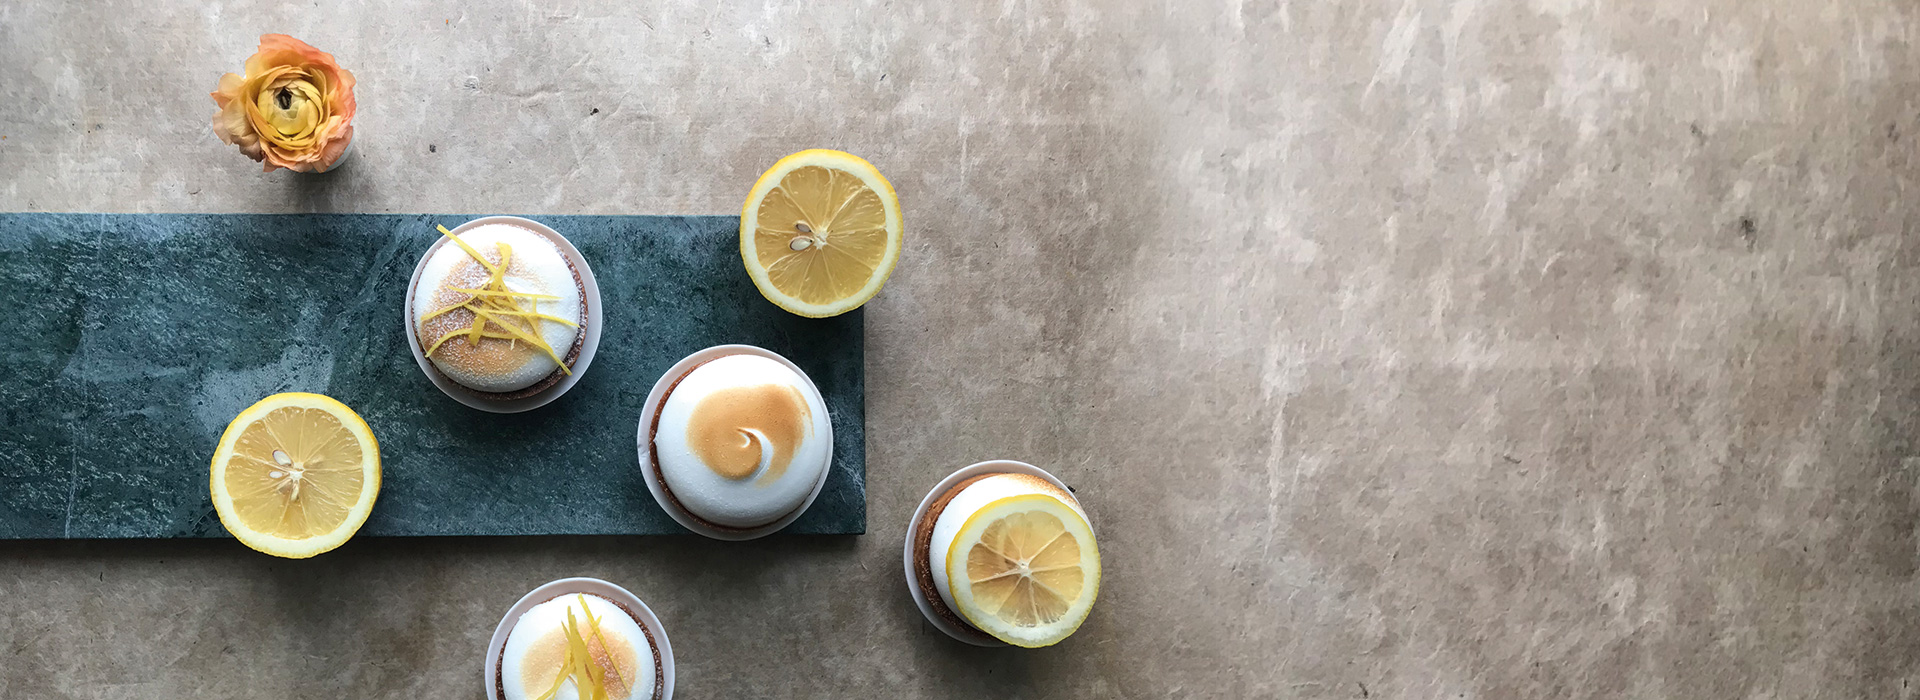 olivenlunden oppskrifter dessert sitronterte med marengs lemoncurd sitronbalsamico